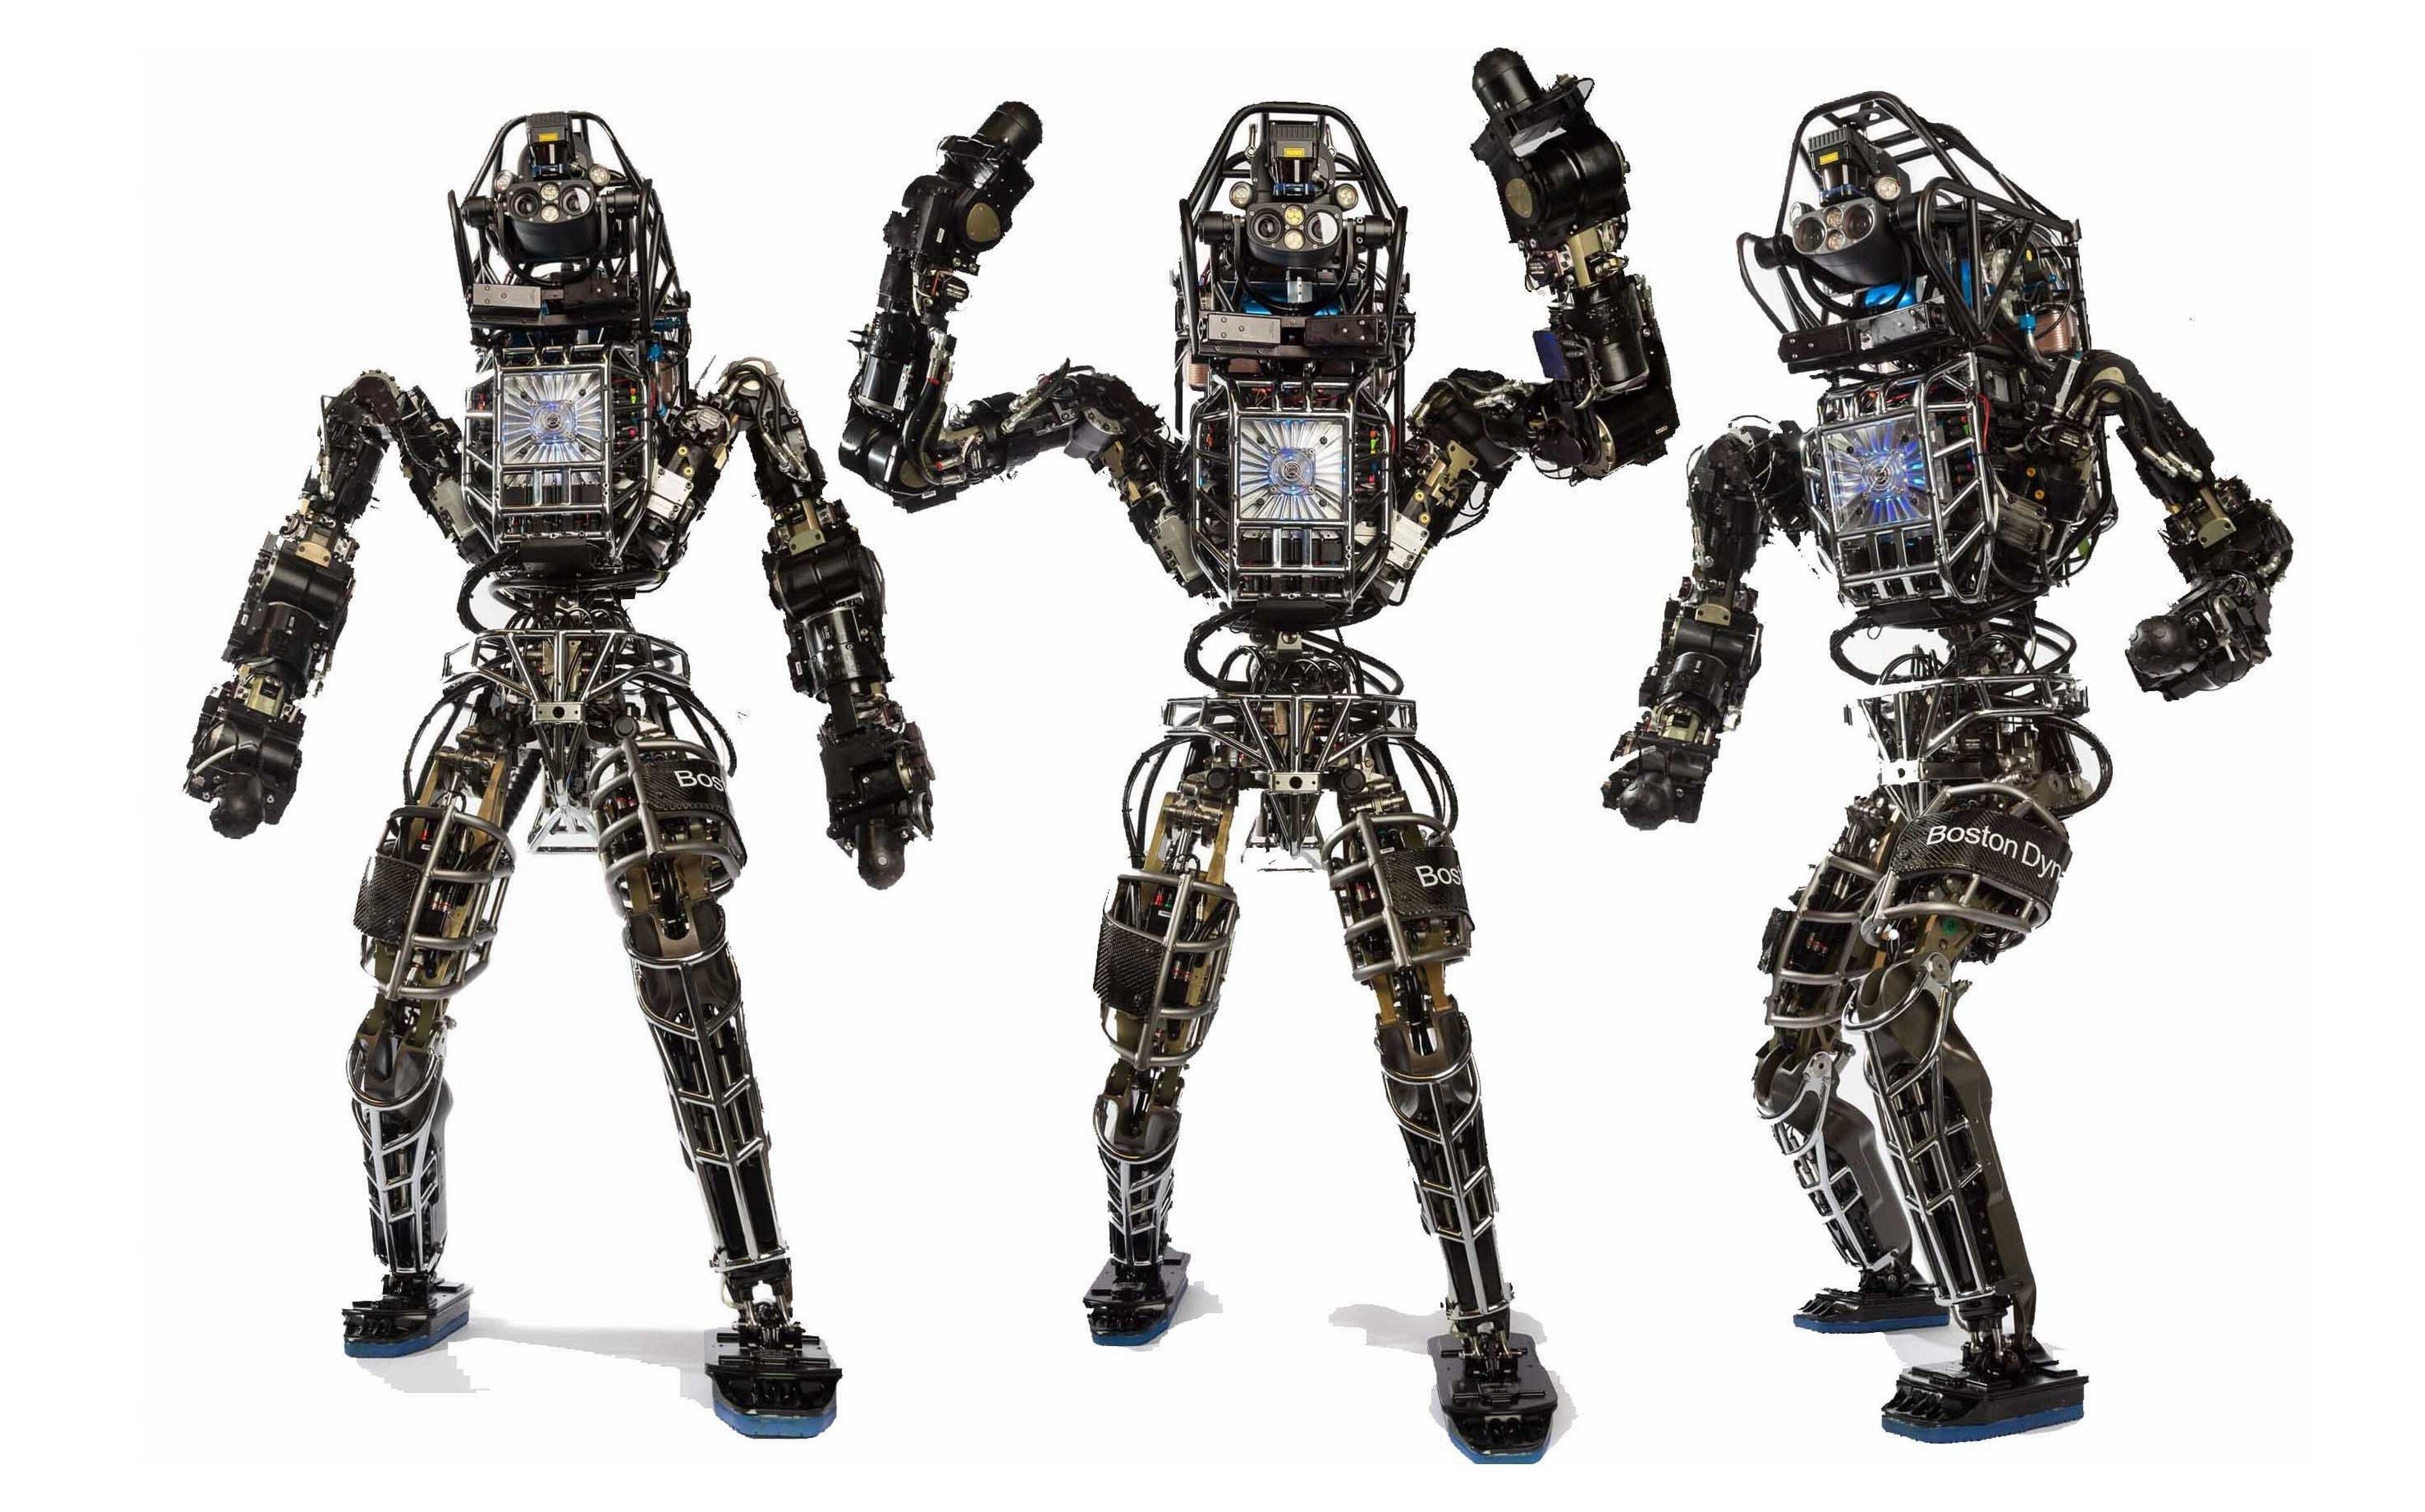 robot atlas 4k wallpaper download free. Boston dynamics, Humanoid robot, Google robot